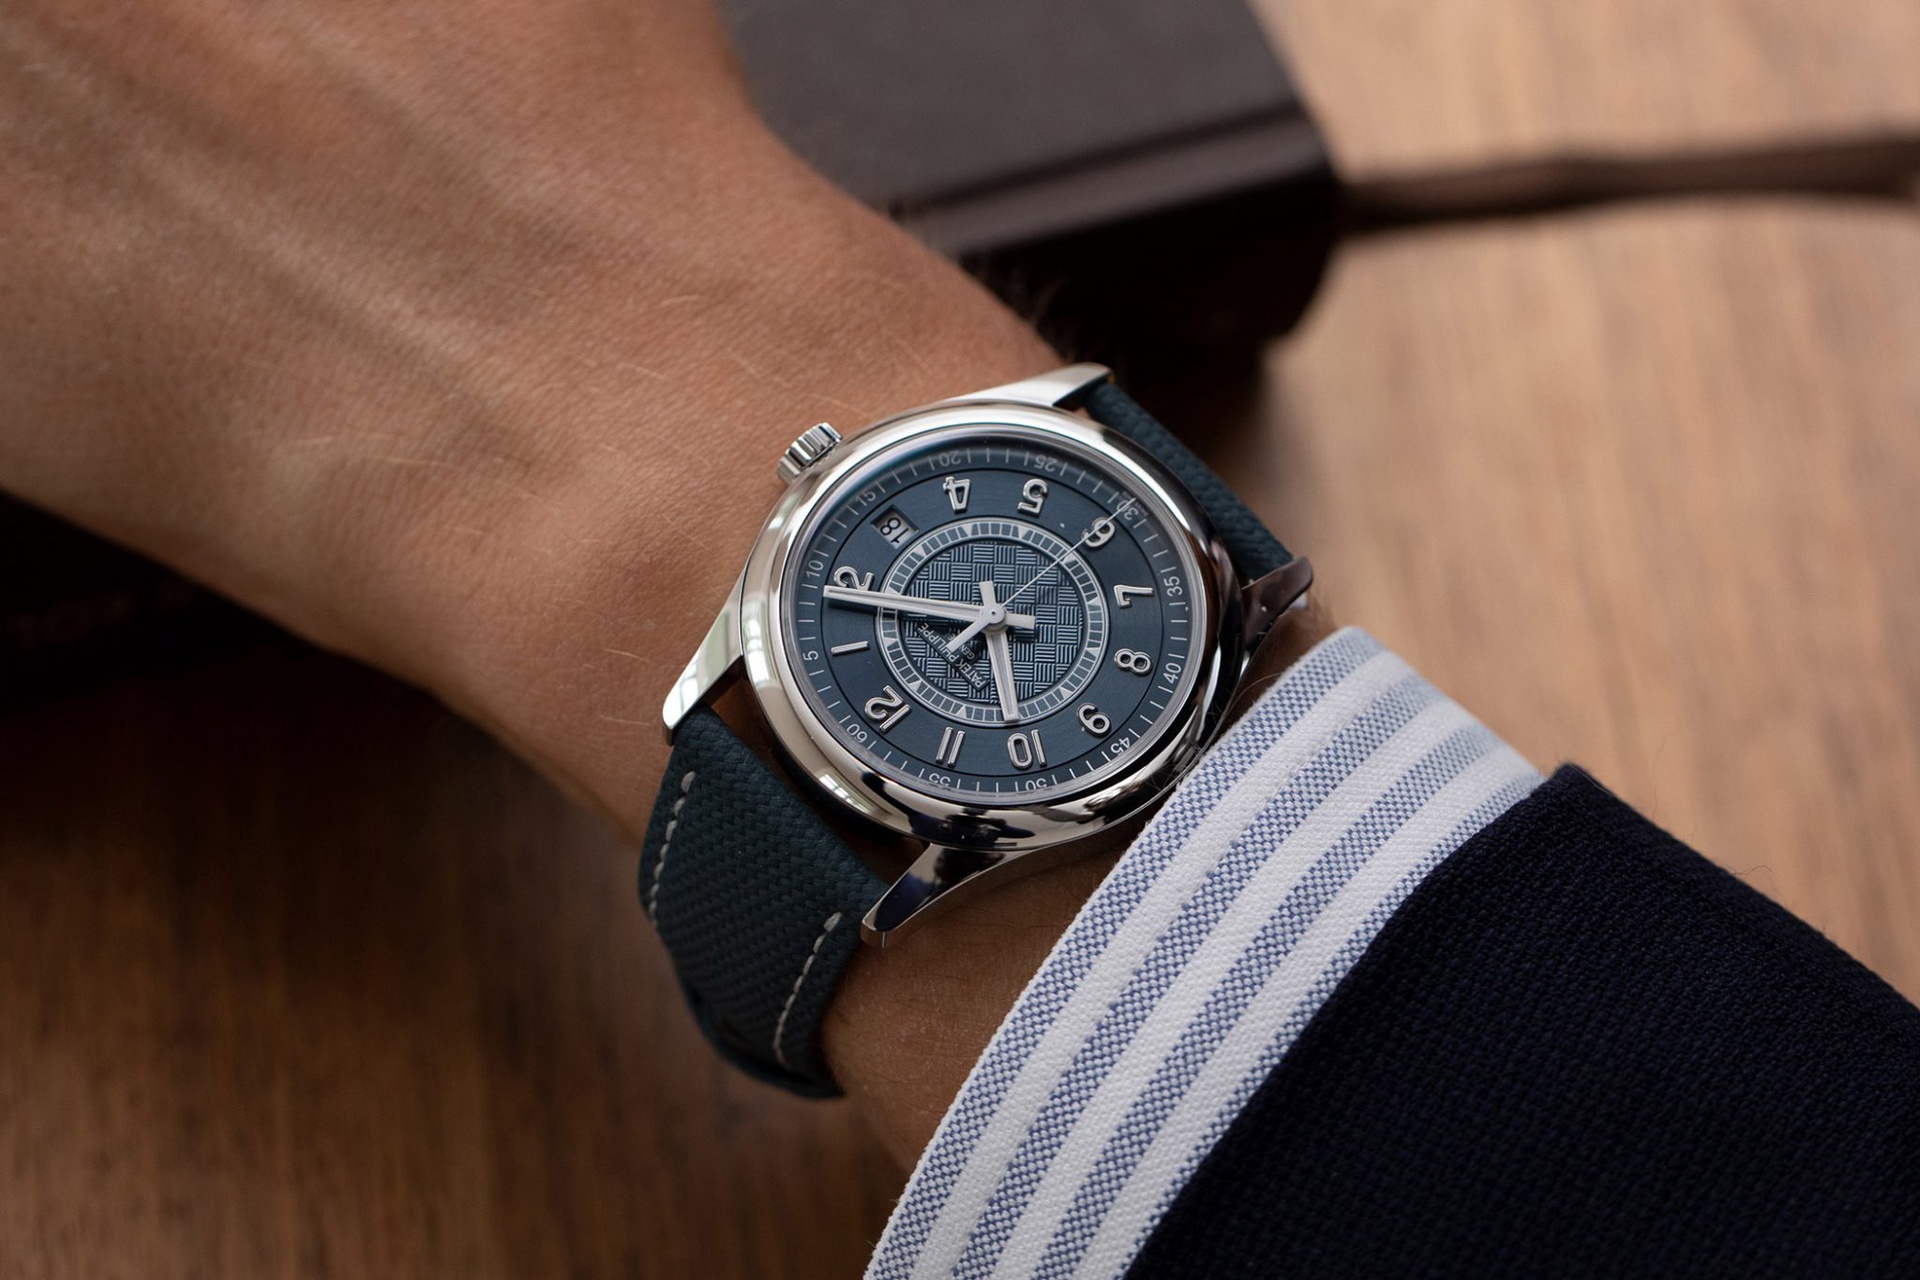 Với thiết kế khung thép chắc chắn, quai đeo dây da nhẹ và bền cùng màu xanh dương đậm không kén da, chiếc đồng hồ này thoả mãn được yêu cầu về một mẫu phụ kiện thích hợp diện hàng ngày. Hiện nay Patek Philipe Calatrava Ref 6007A-001 chỉ sản xuất 1000 chiếc và có giá 28.250 đô ( khoảng 650 triệu đồng).